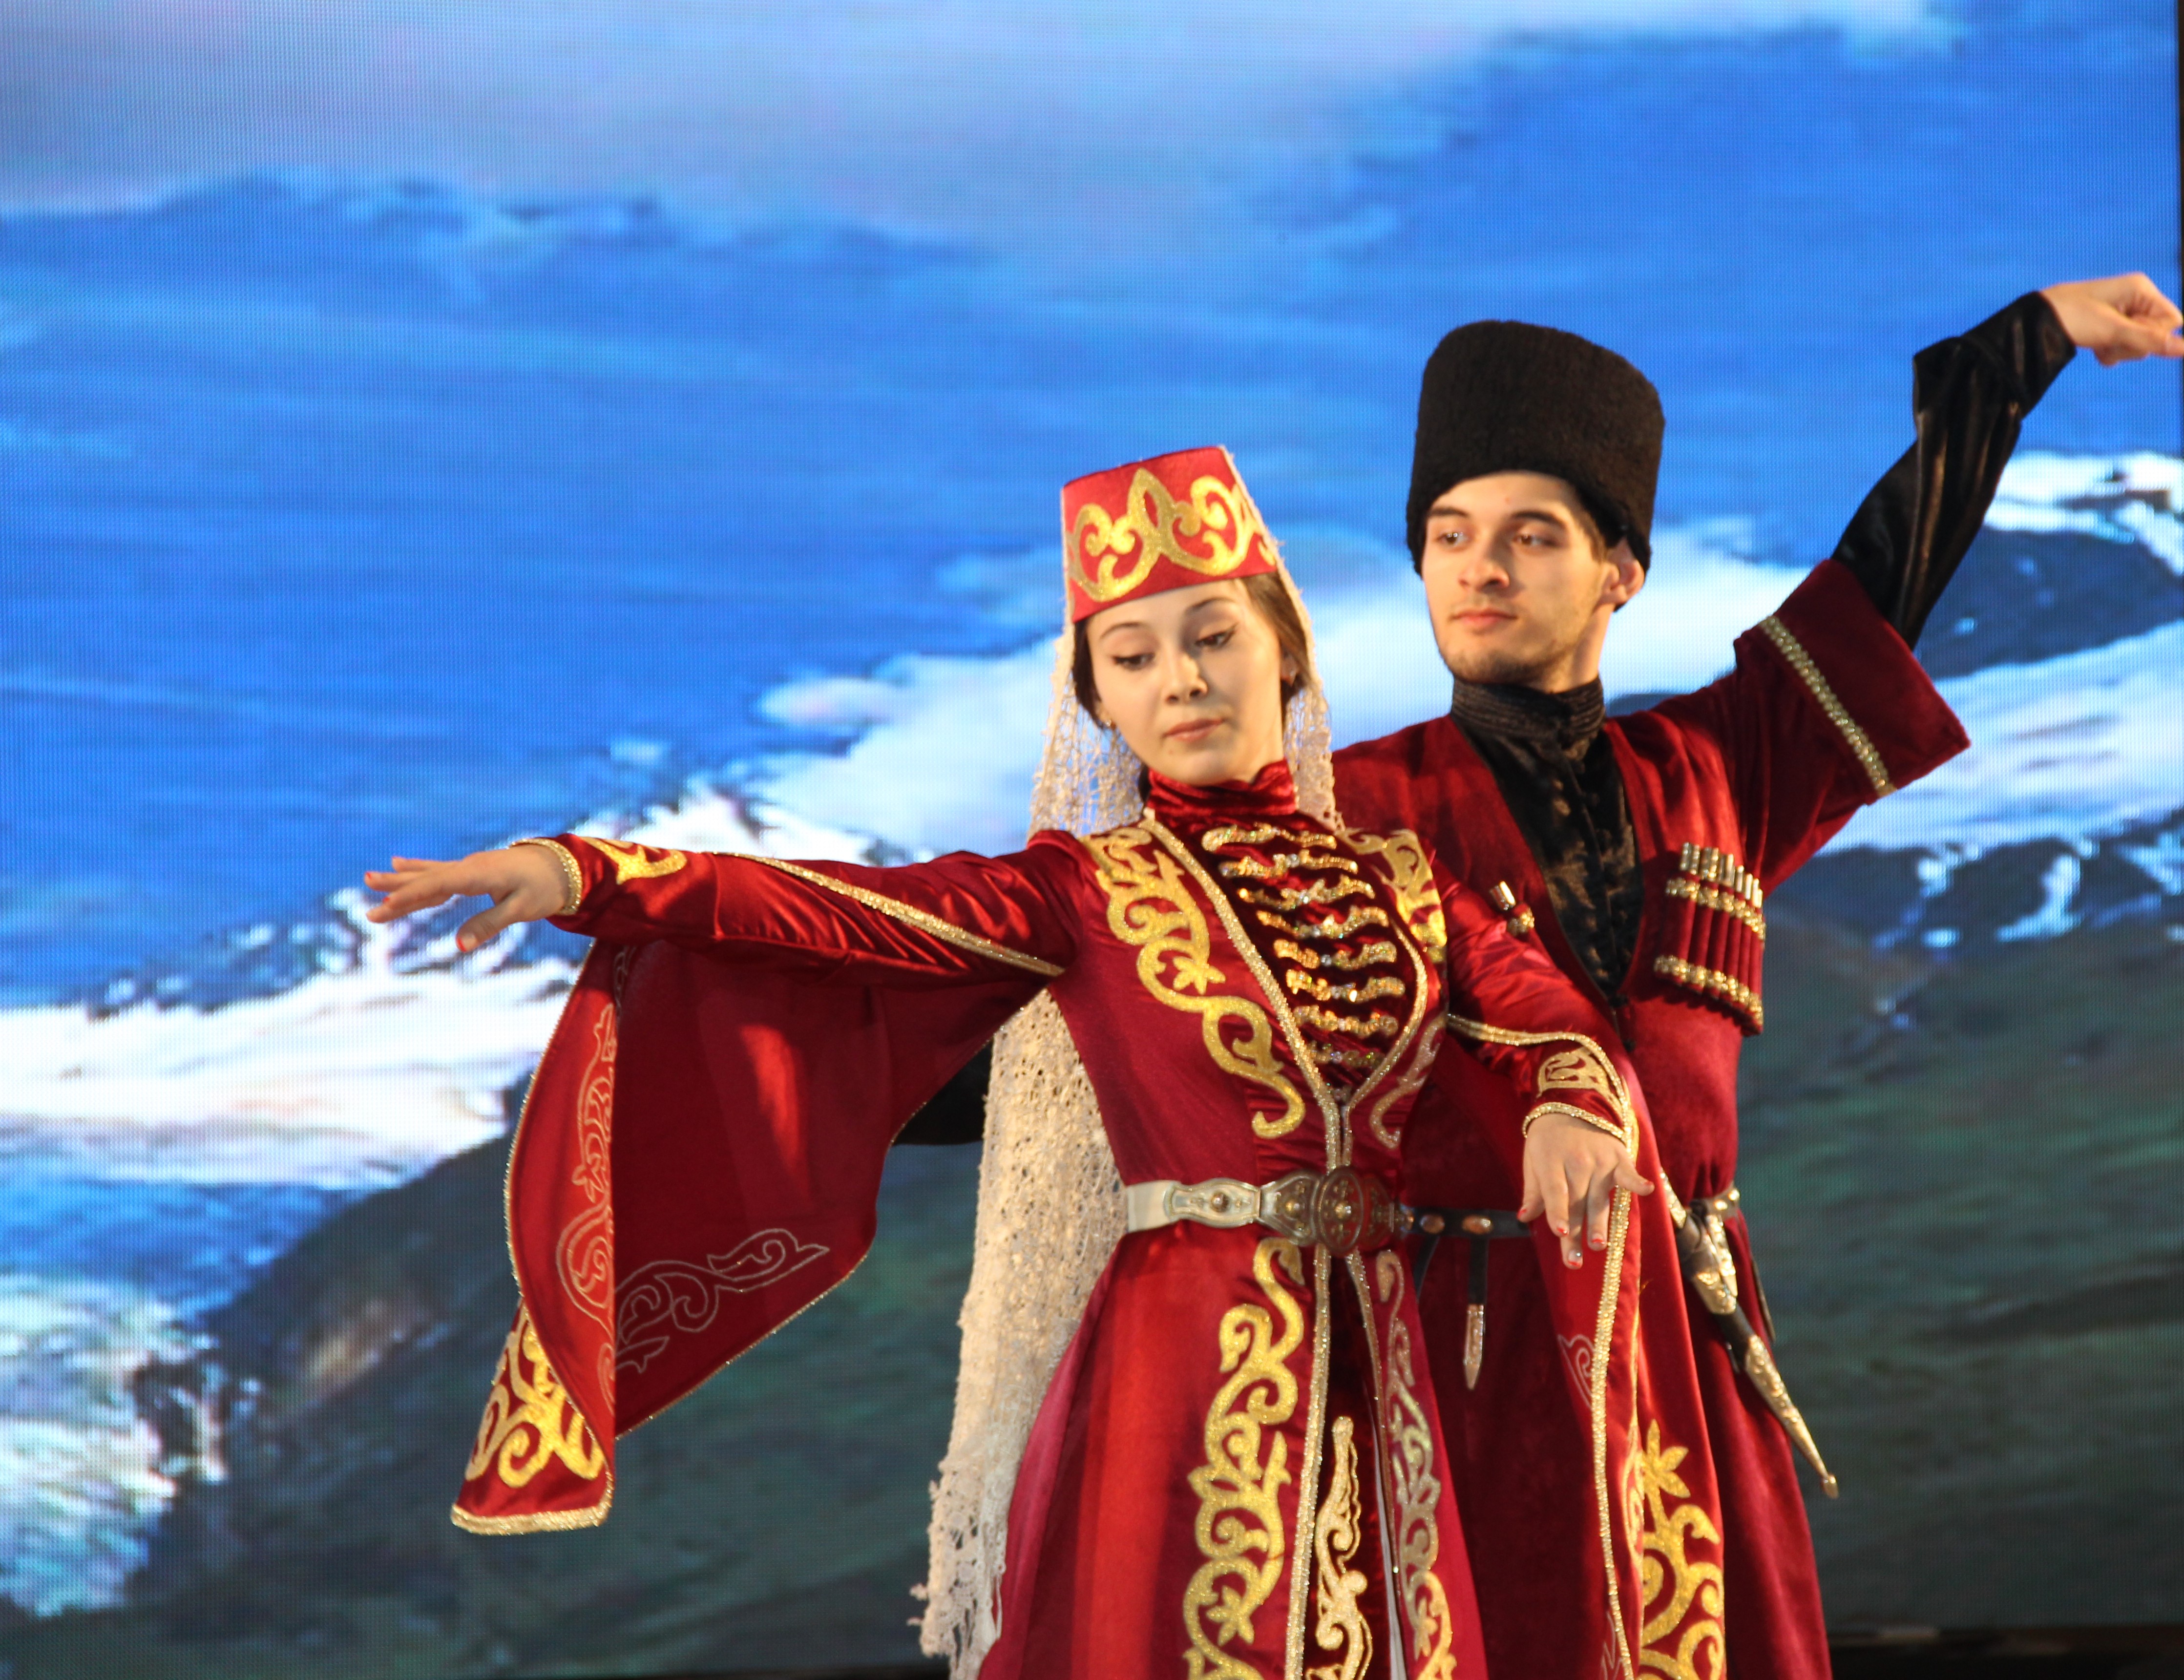 Дагестанский национальный костюм Дагестан. Национальный костюм Дагестана, ченцев. Национальная одежда дагестанцев Дагестана. Дагестанский народный костюм.